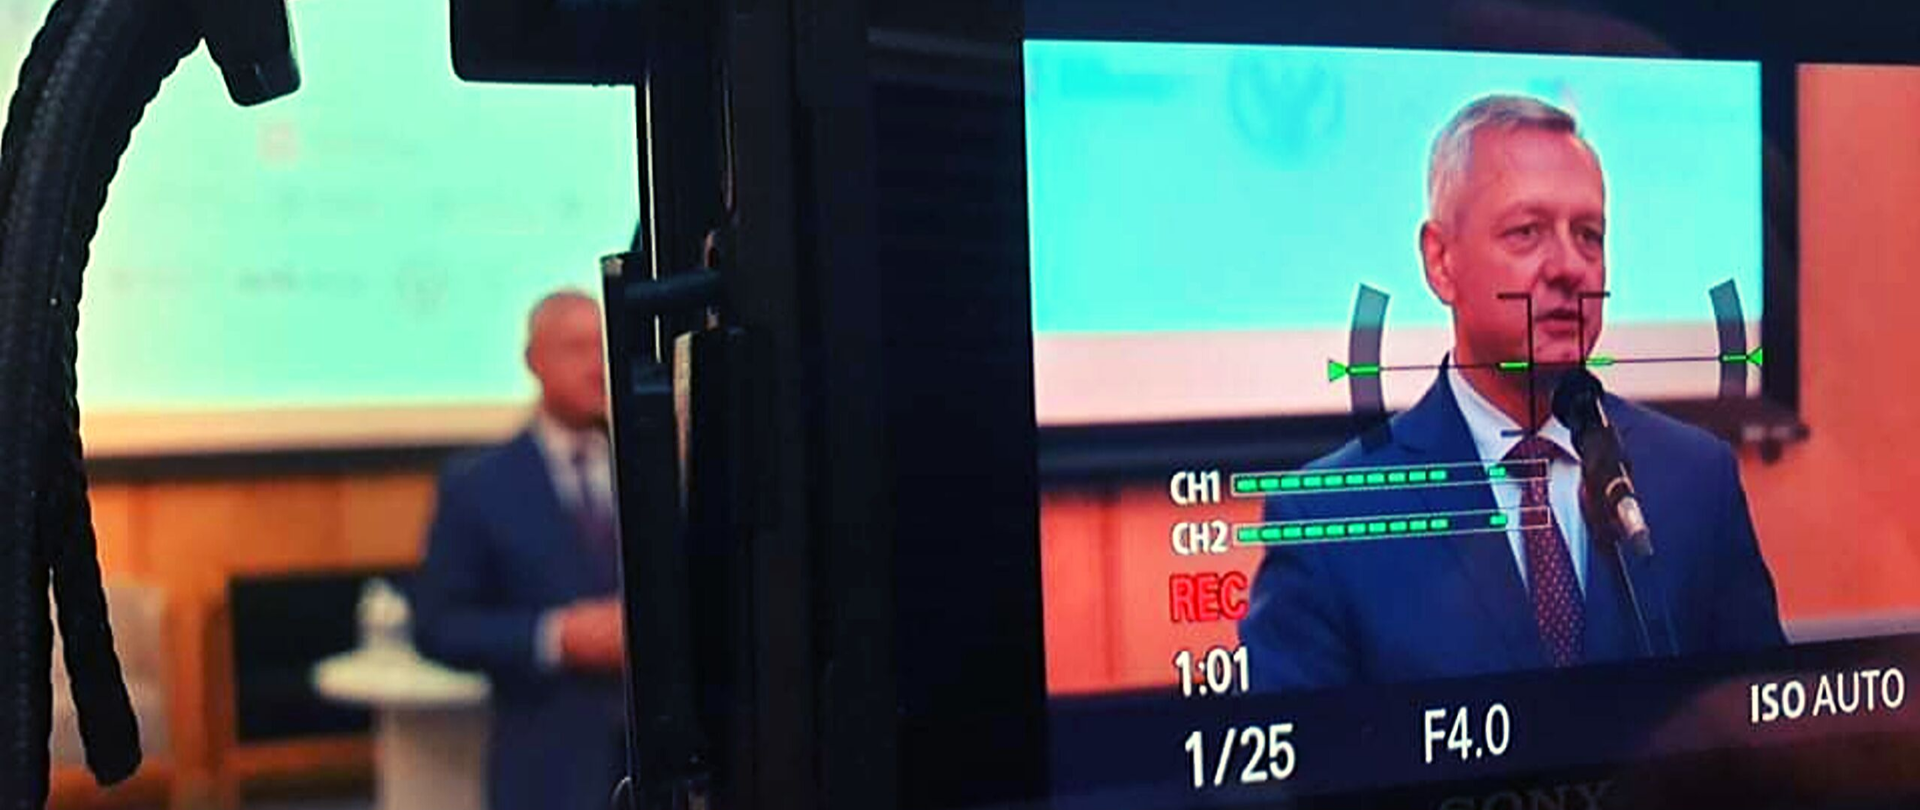 Minister Marek Zagórski podczas przemówienia. Widać postać na ekranie aparatu